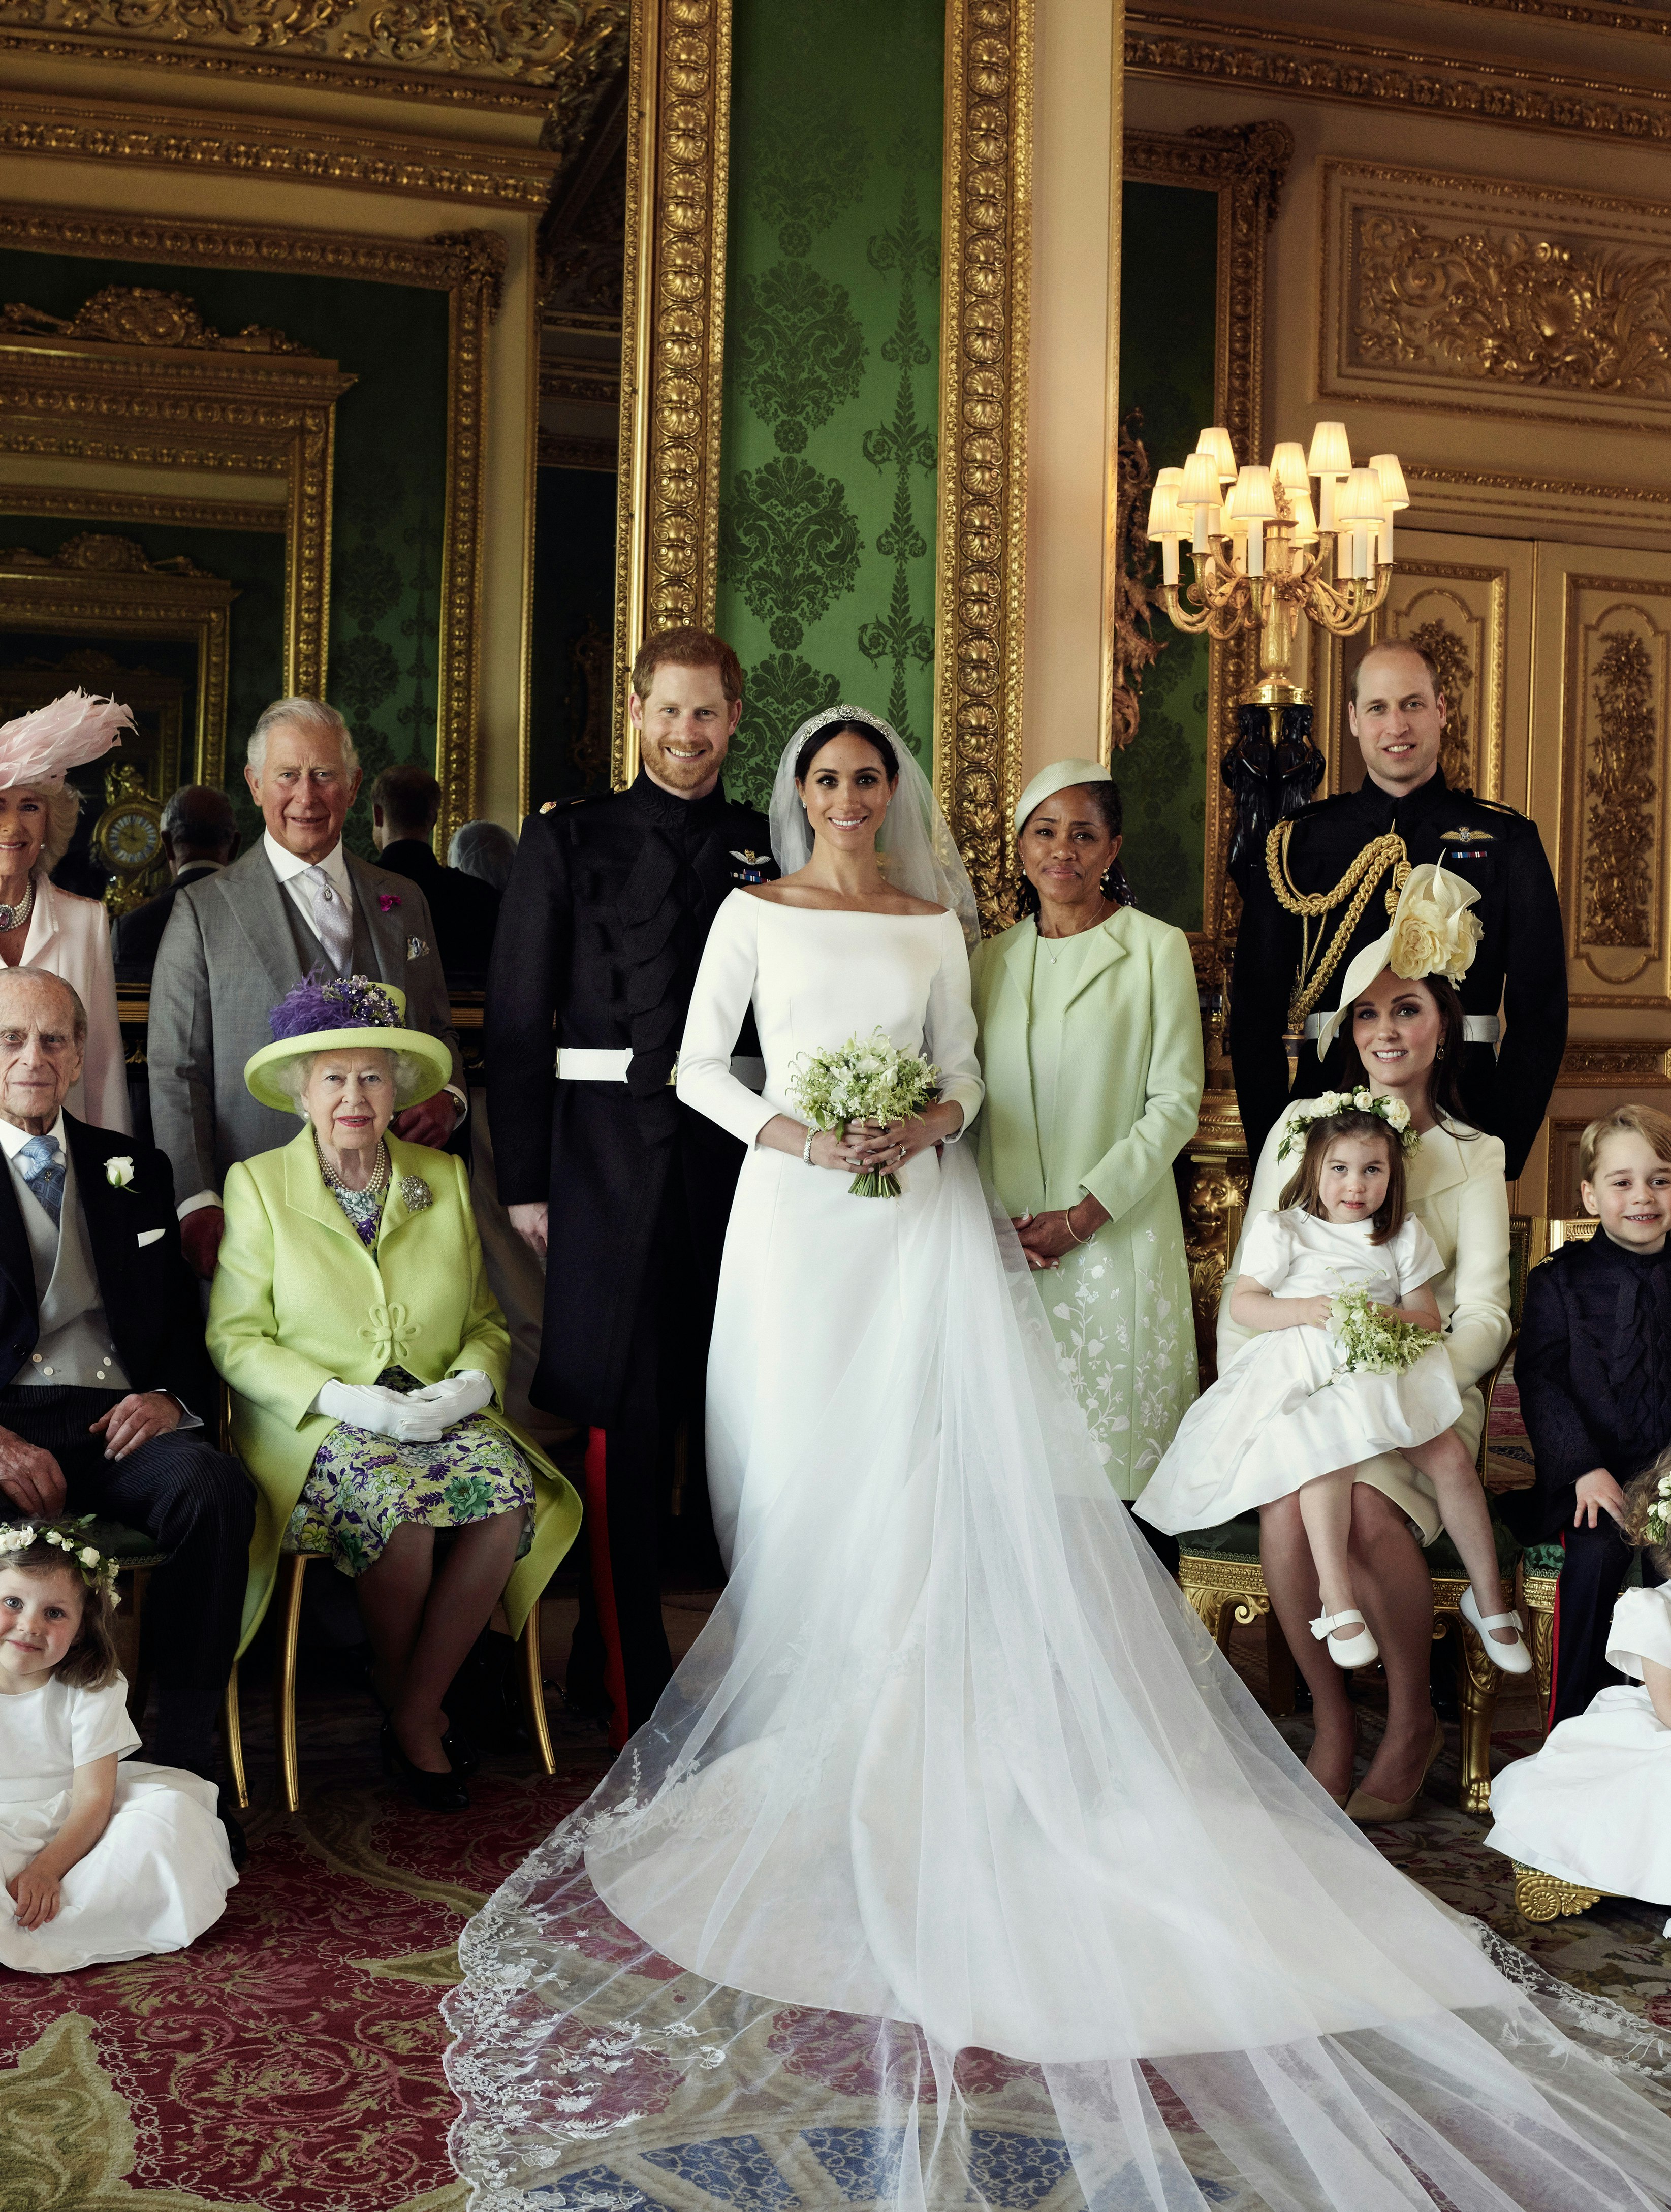 Se de officielle bryllupsbilleder af Prins Harry og Meghan Markle